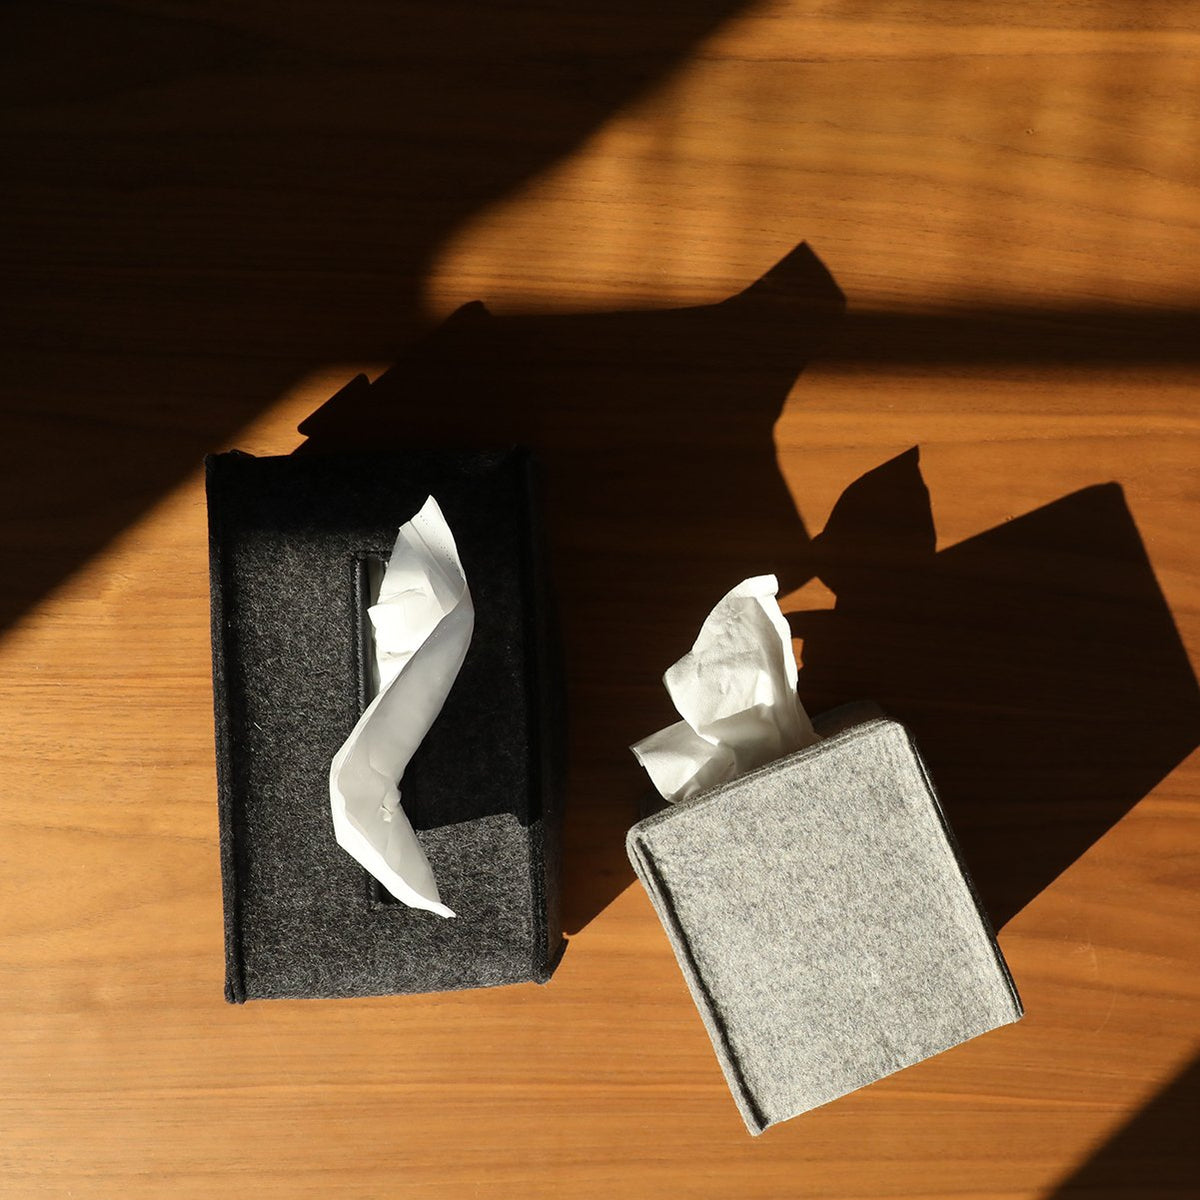 Tissue Box Cover Small